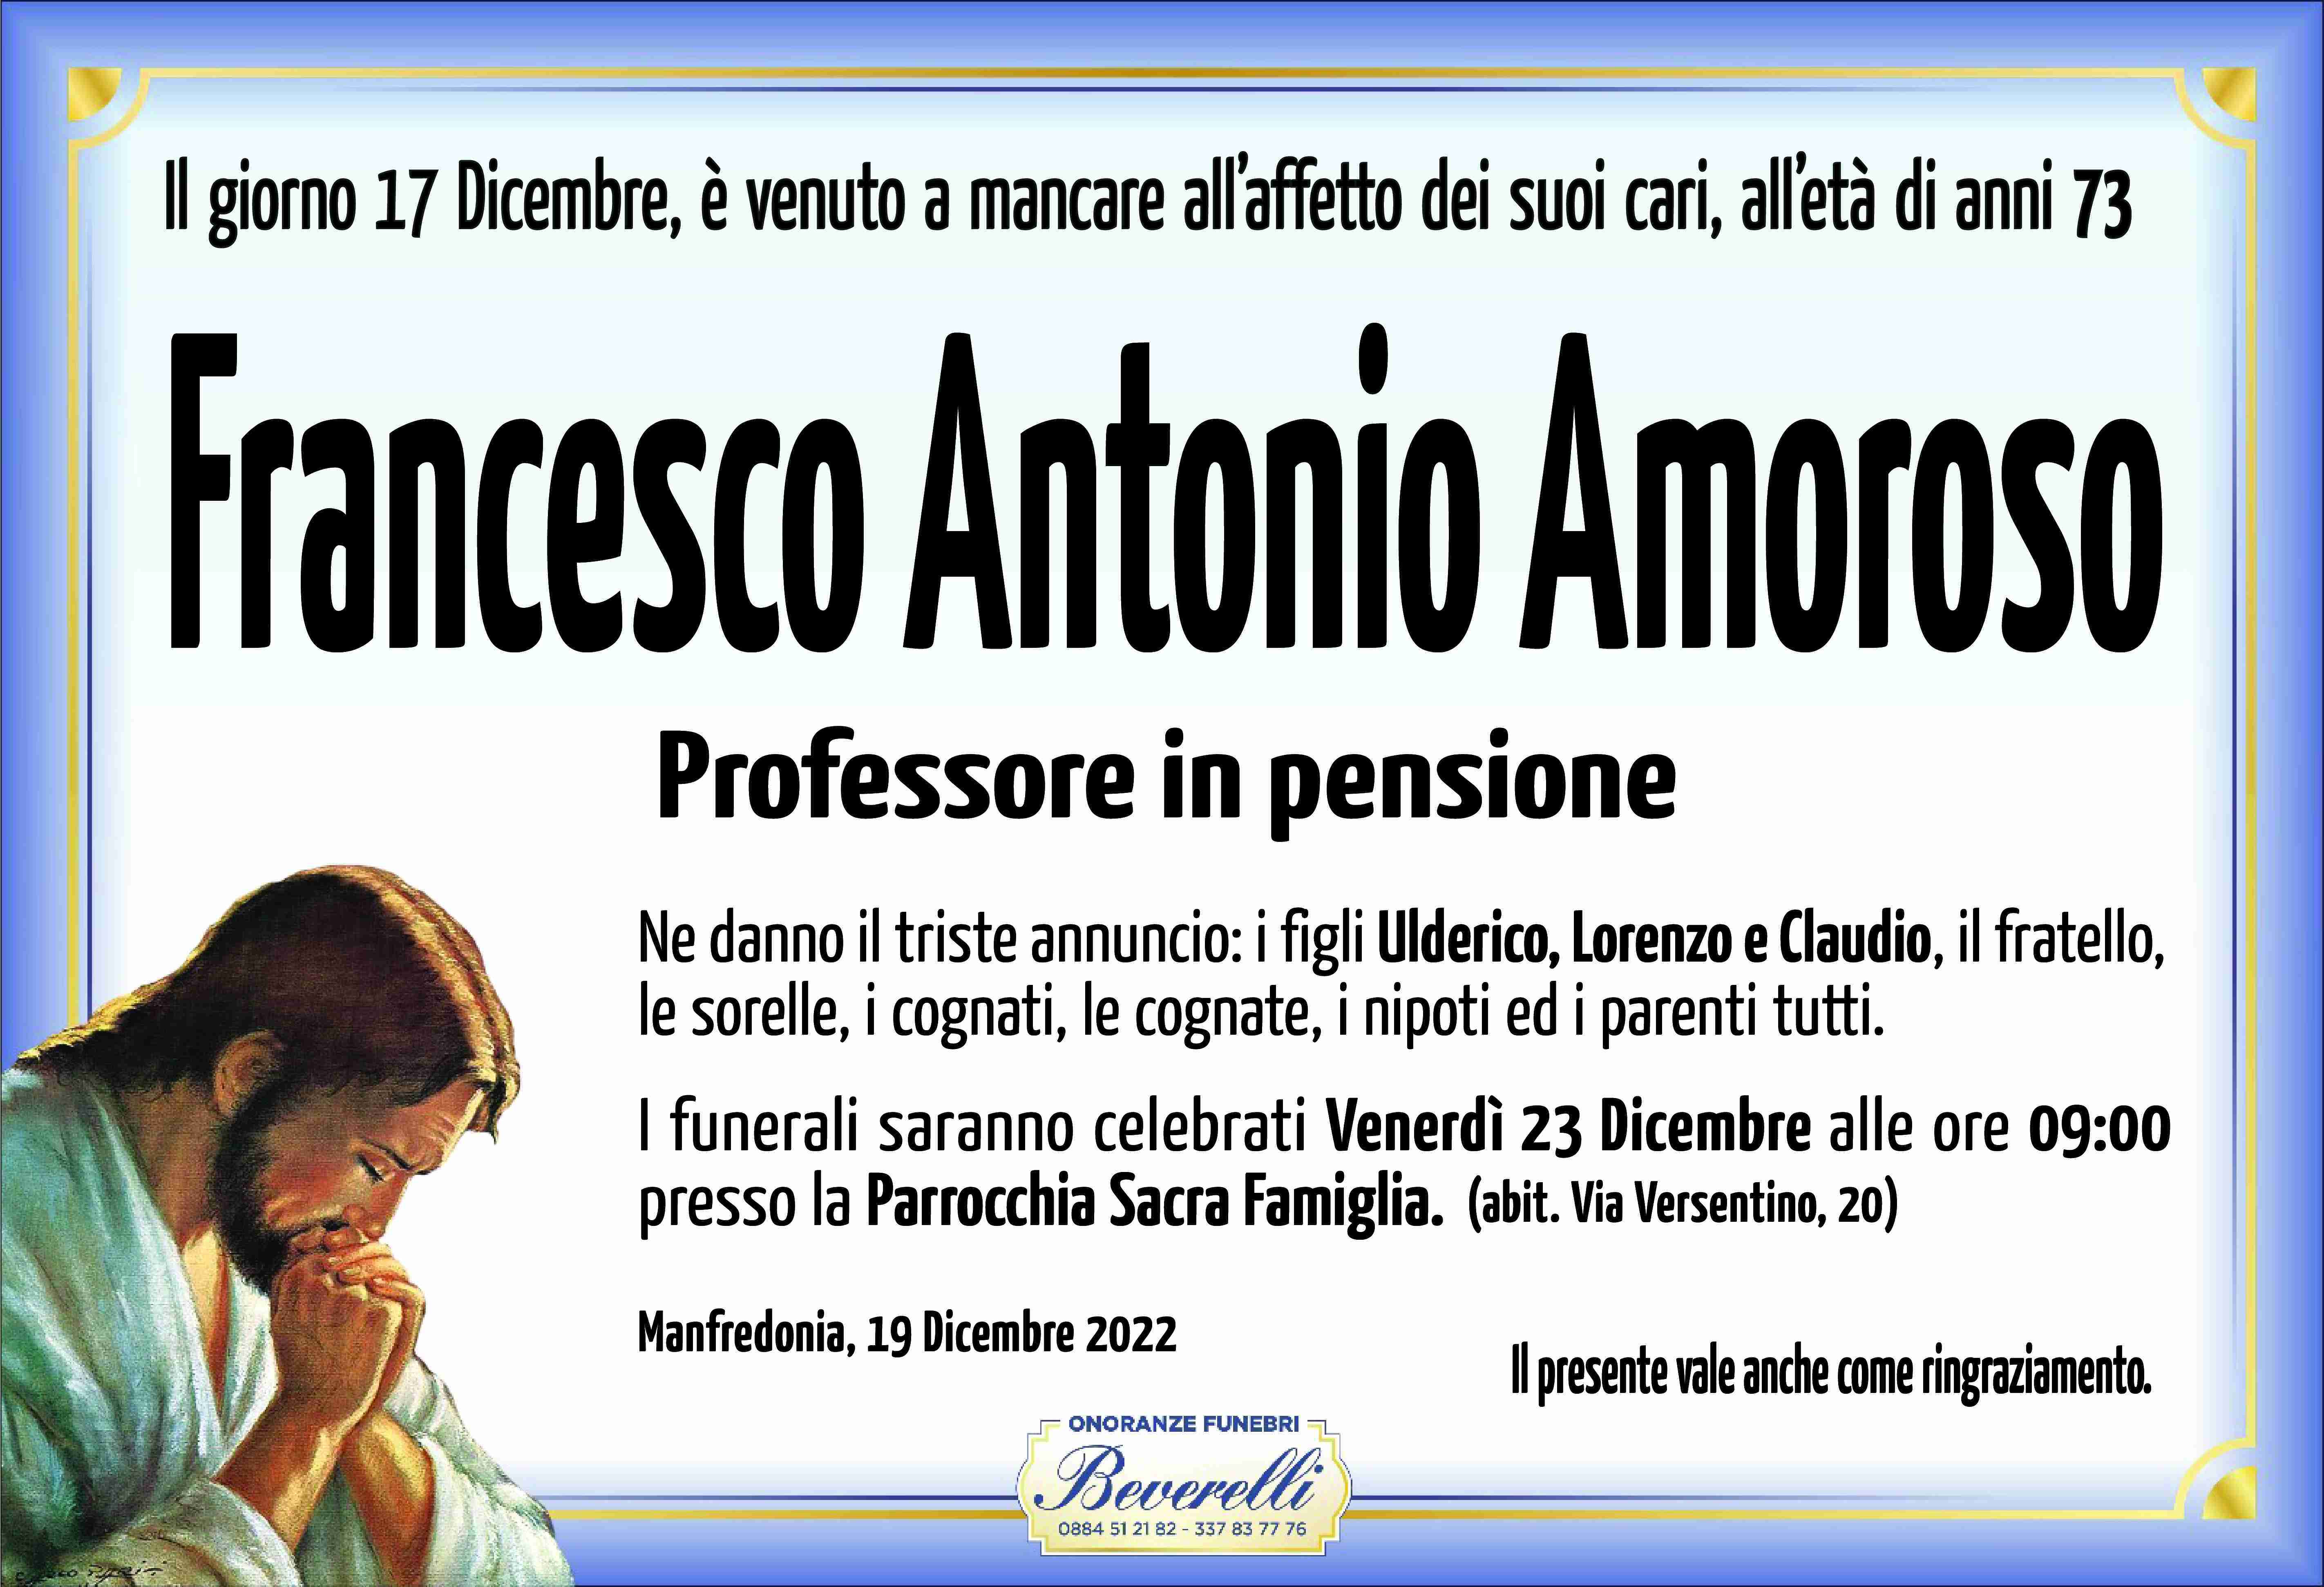 Francesco Antonio Amoroso